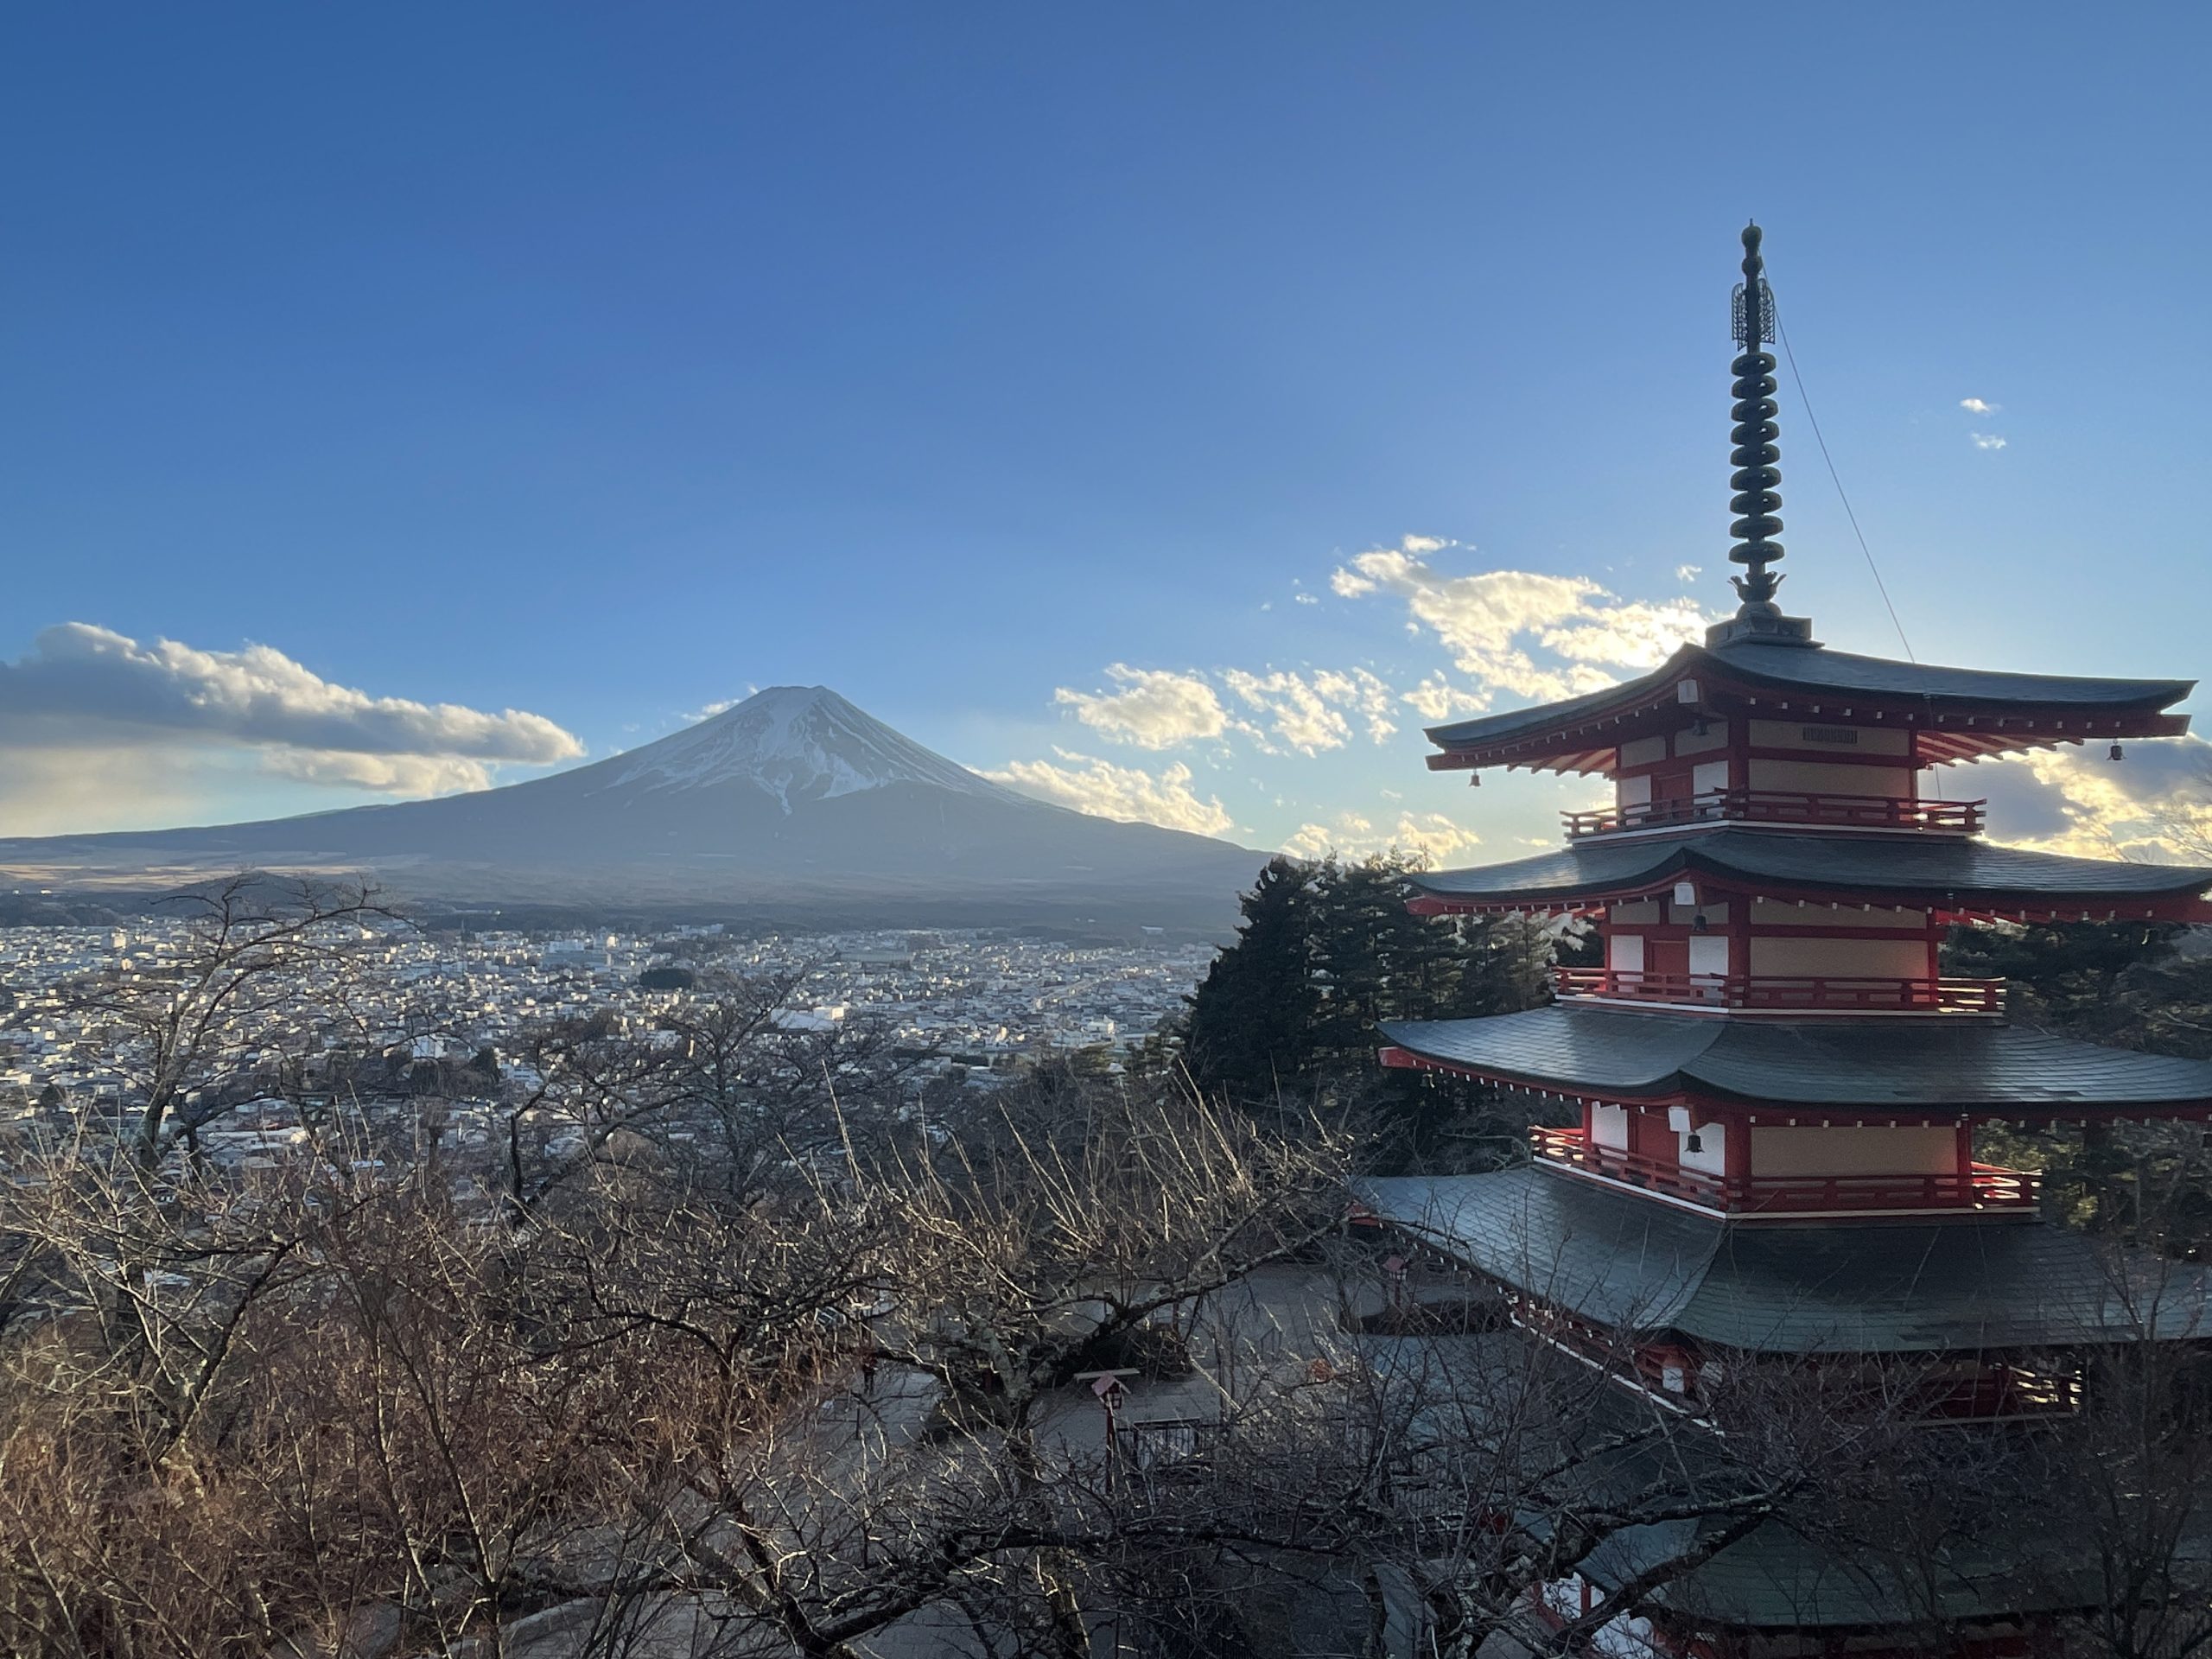 Arakura Fuji Sengen Shirine with Mt.Fuji